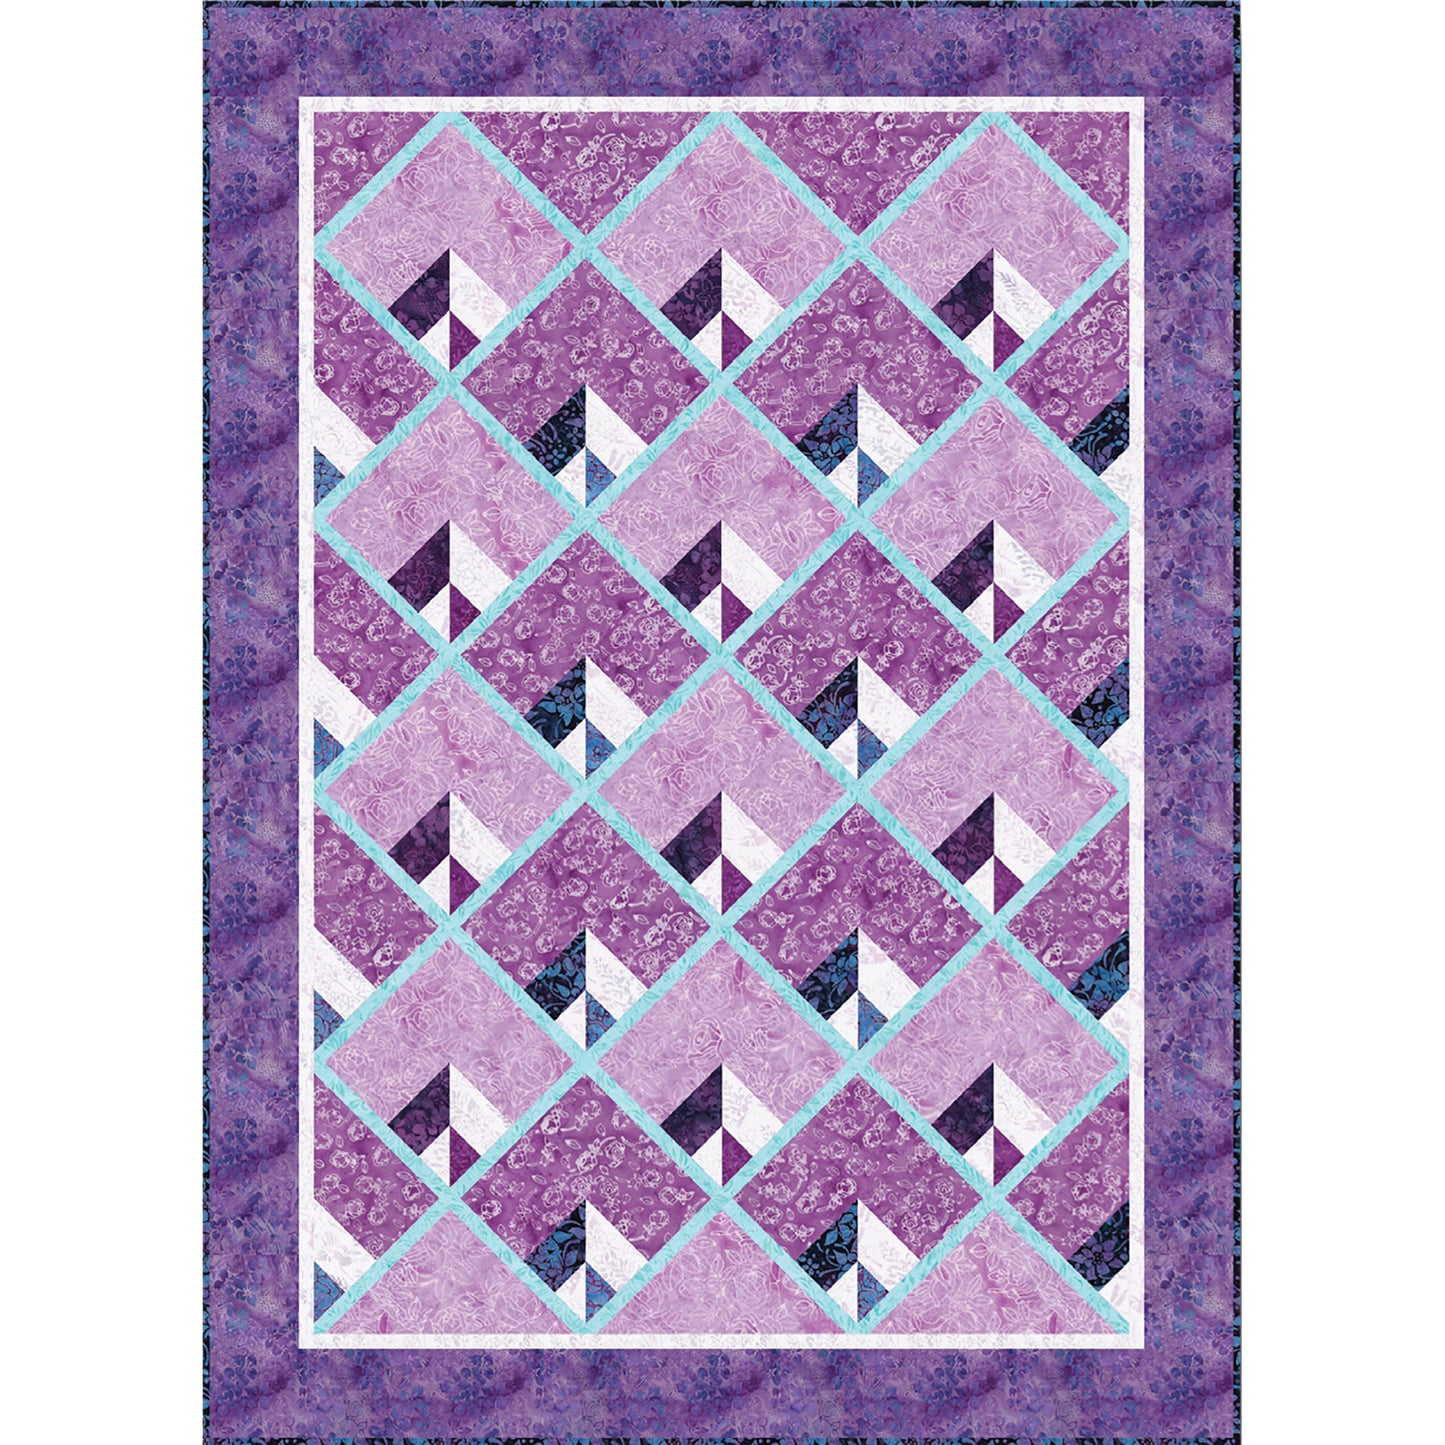 Deco Elegance Quilt TWW-0964e - Downloadable Pattern